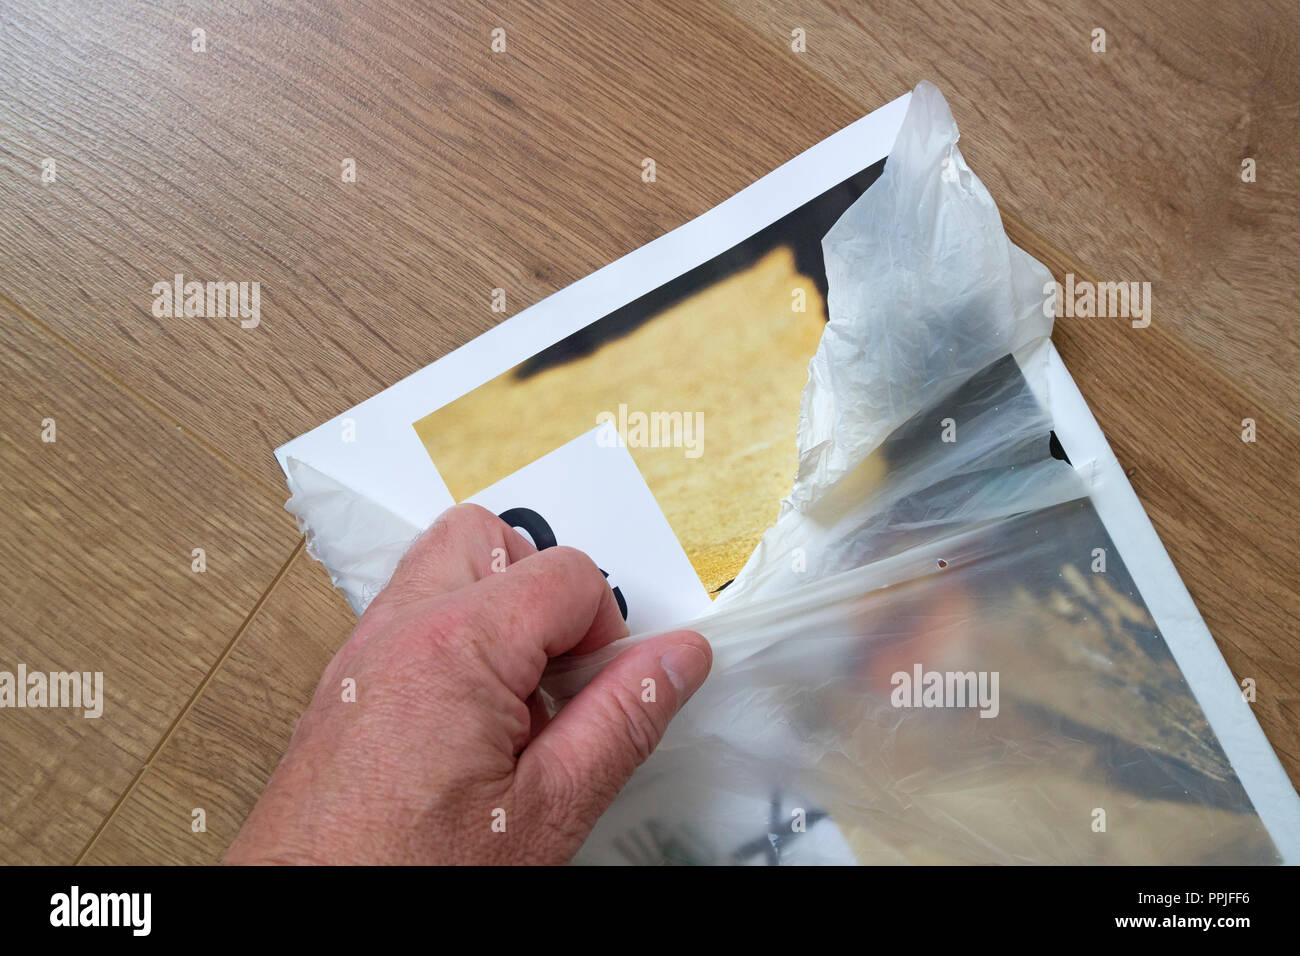 Persona lagrimeo abriendo una revista hecha de envoltura de plástico biodegradable de almidón de maíz, REINO UNIDO Foto de stock